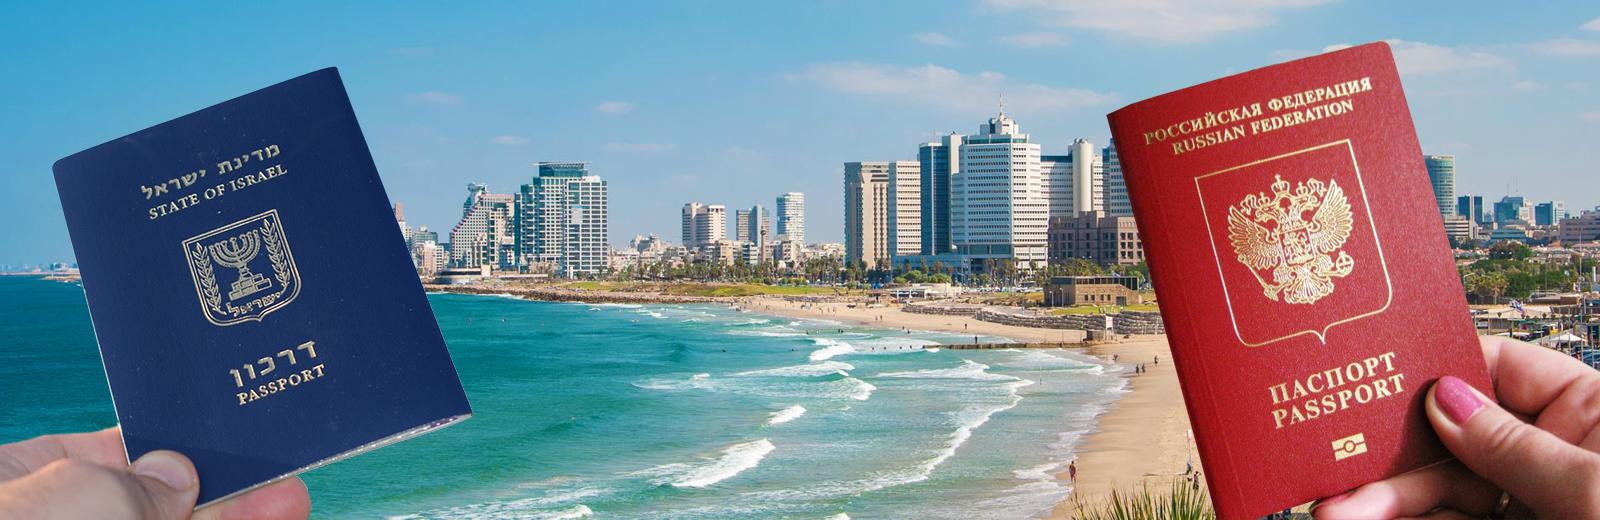 Работа и доступные вакансии в израиле для русских в 2021 году